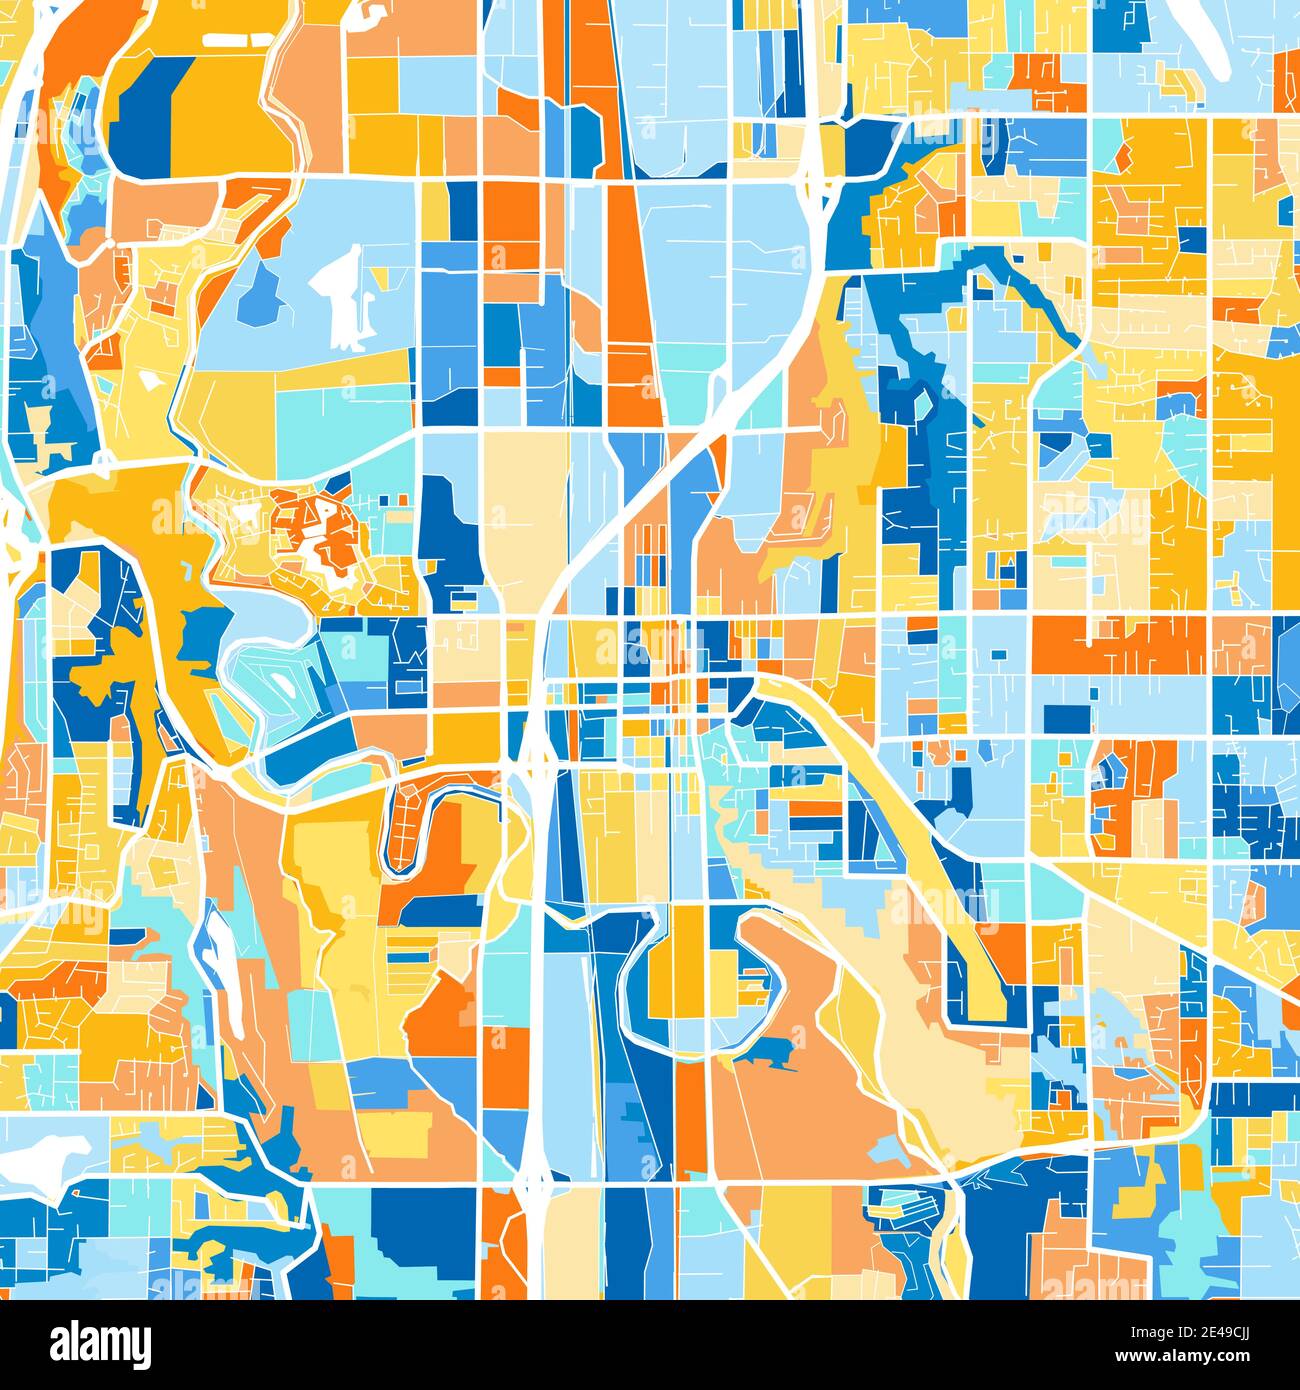 Mappa artistica a colori di Kent, Washington, UnitedStates in blu e arance. Le gradazioni di colore nella mappa Kent seguono un motivo casuale. Illustrazione Vettoriale